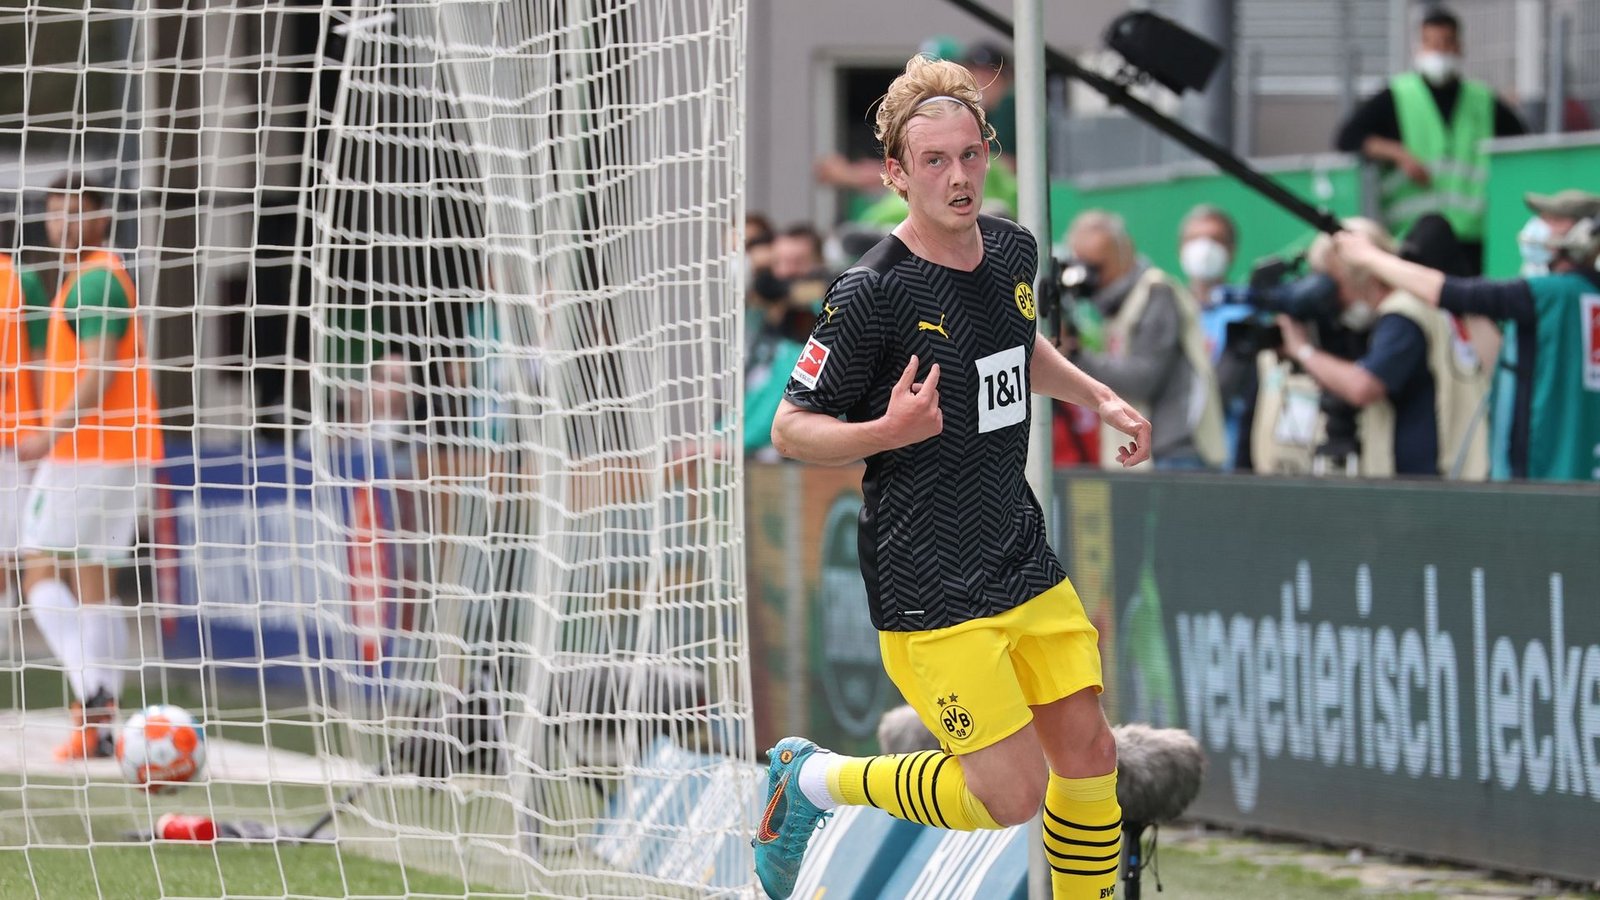 Der Dortmunder Julian Brandt dreht nach seinem Treffer zum 1:0 in Fürth am Tor ab.Foto: Daniel Karmann/dpa